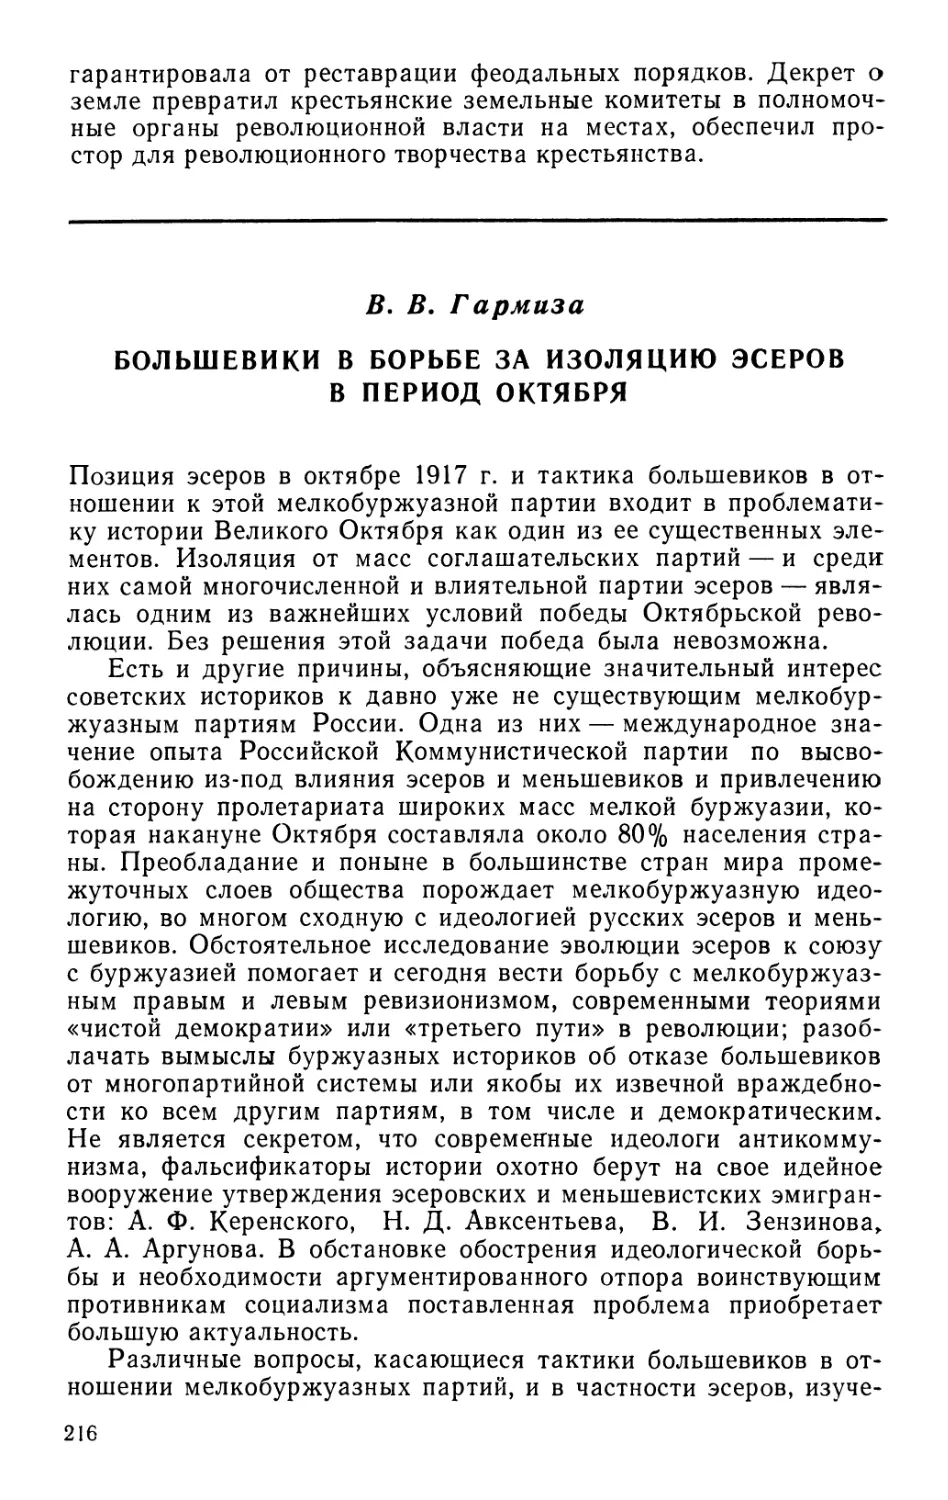 В. В. Гармиза Большевики в борьбе за изоляцию эсеров в период Октября